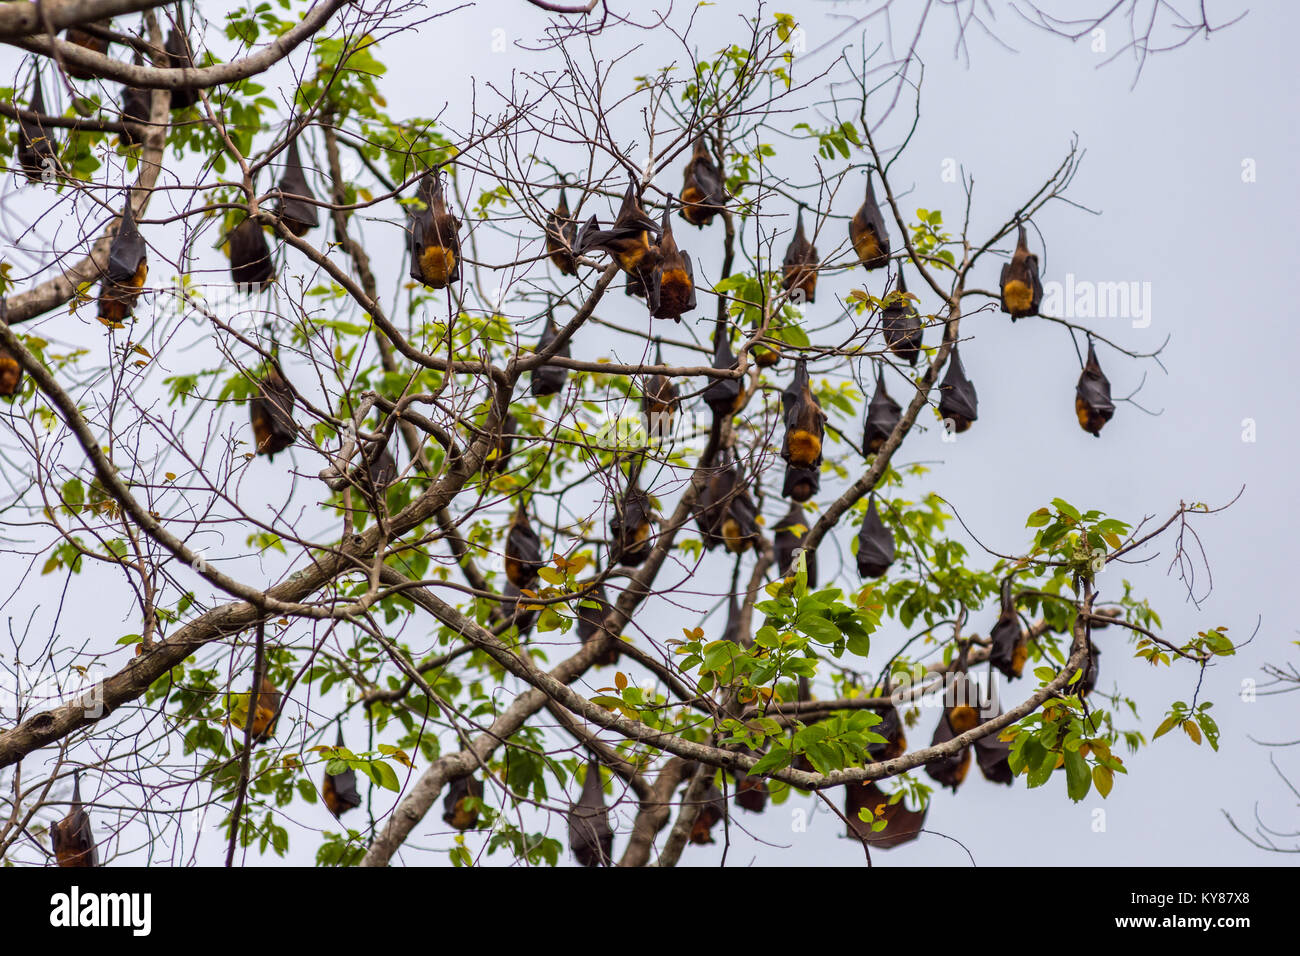 Un arbre plein de perchoir renards volants aka des chauves souris pendant la journée avec de la jungle des forêts philippines dans l'arrière-plan. Banque D'Images